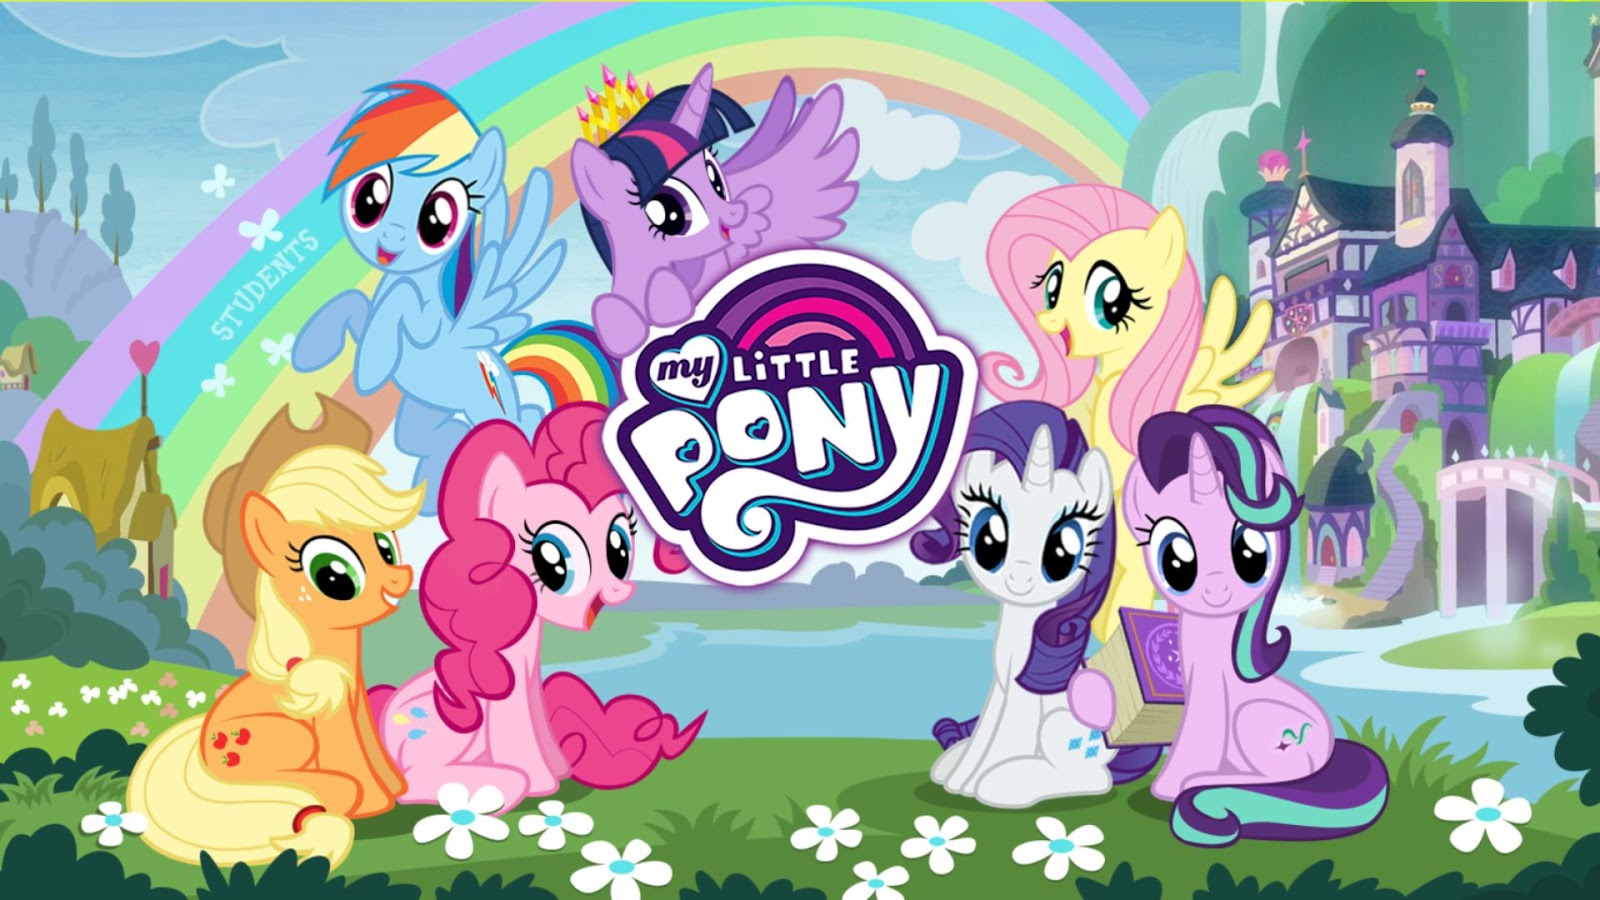 Новейшее игры май литл пони. My little Pony магия принцесс игра. My little Pony магия принцесс Gameloft. My little Pony магия принцесс Понивилль. My little Pony School игра.